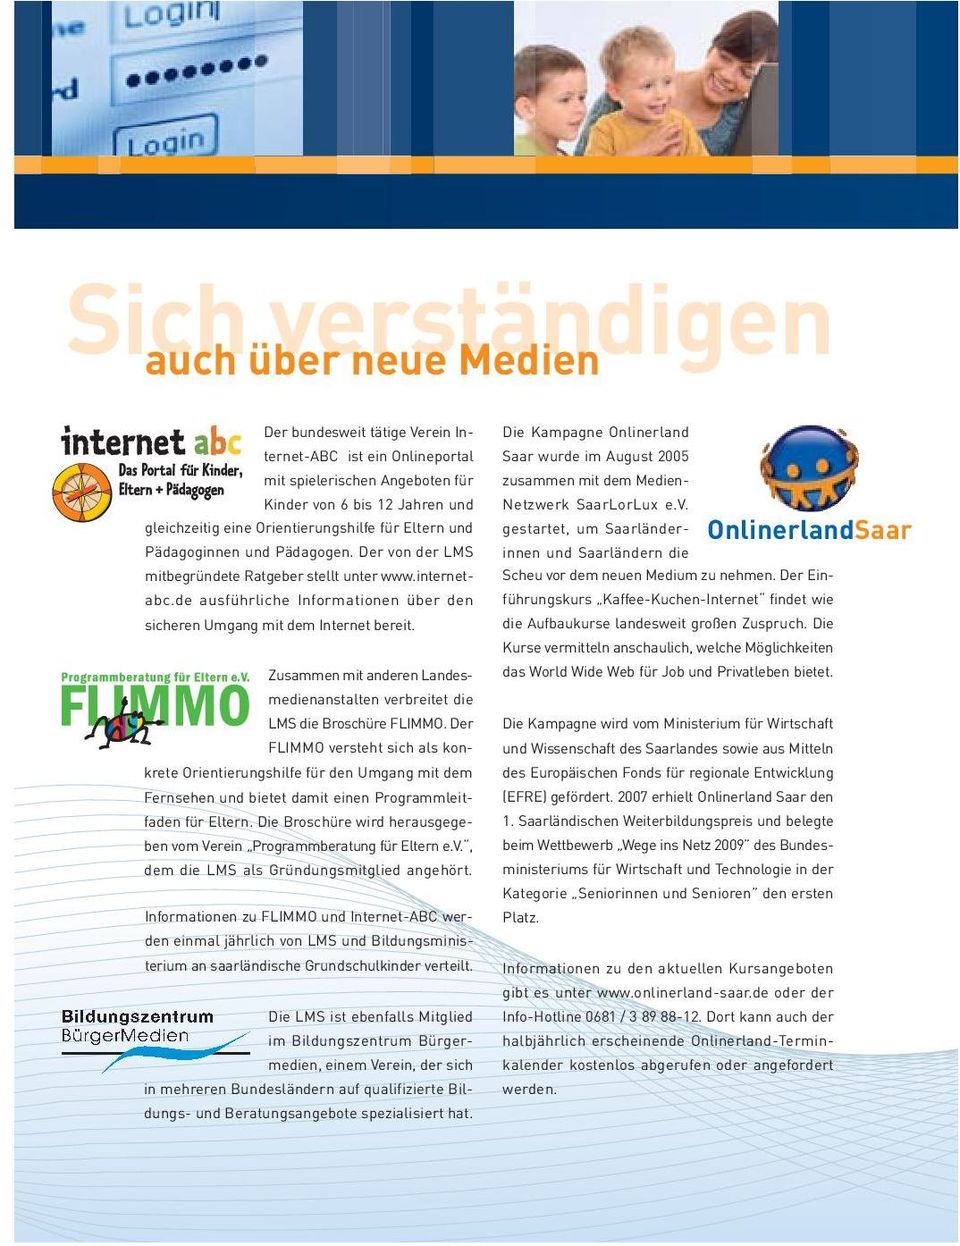 de ausführliche Informationen über den sicheren Umgang mit dem Internet bereit. Zusammen mit anderen Landesmedienanstalten verbreitet die LMS die Broschüre FLIMMO.